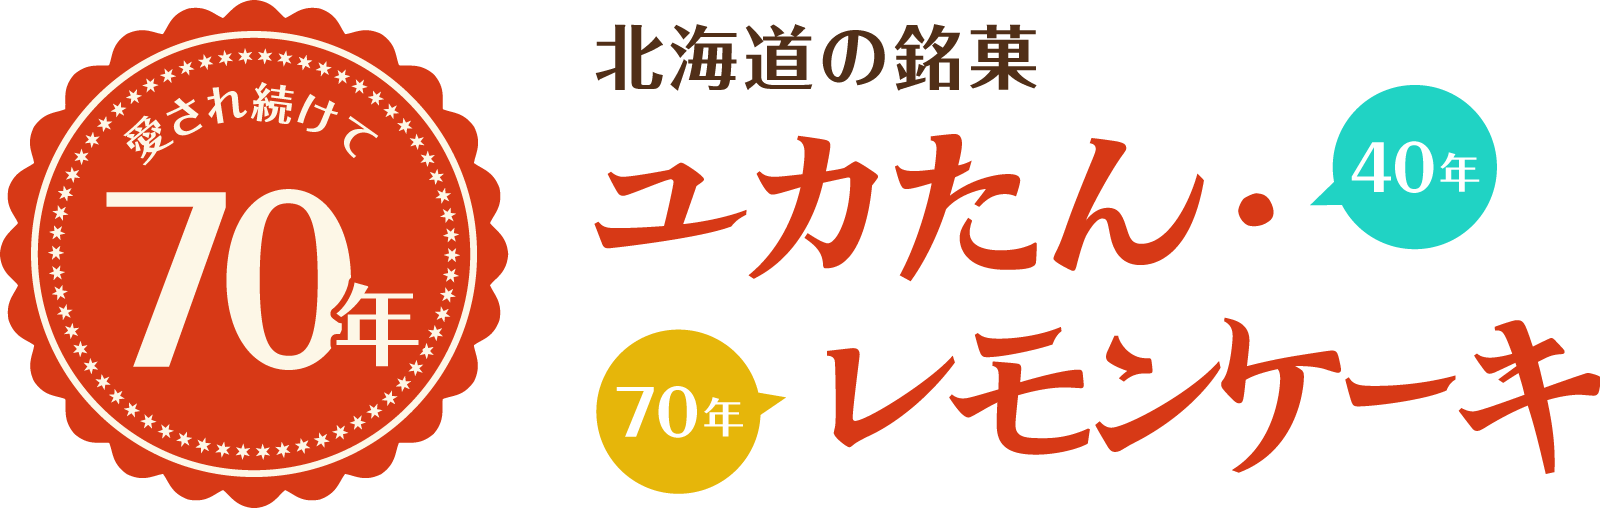 愛され続けて70年、北海道の銘菓「ユカたん・レモンケーキ」